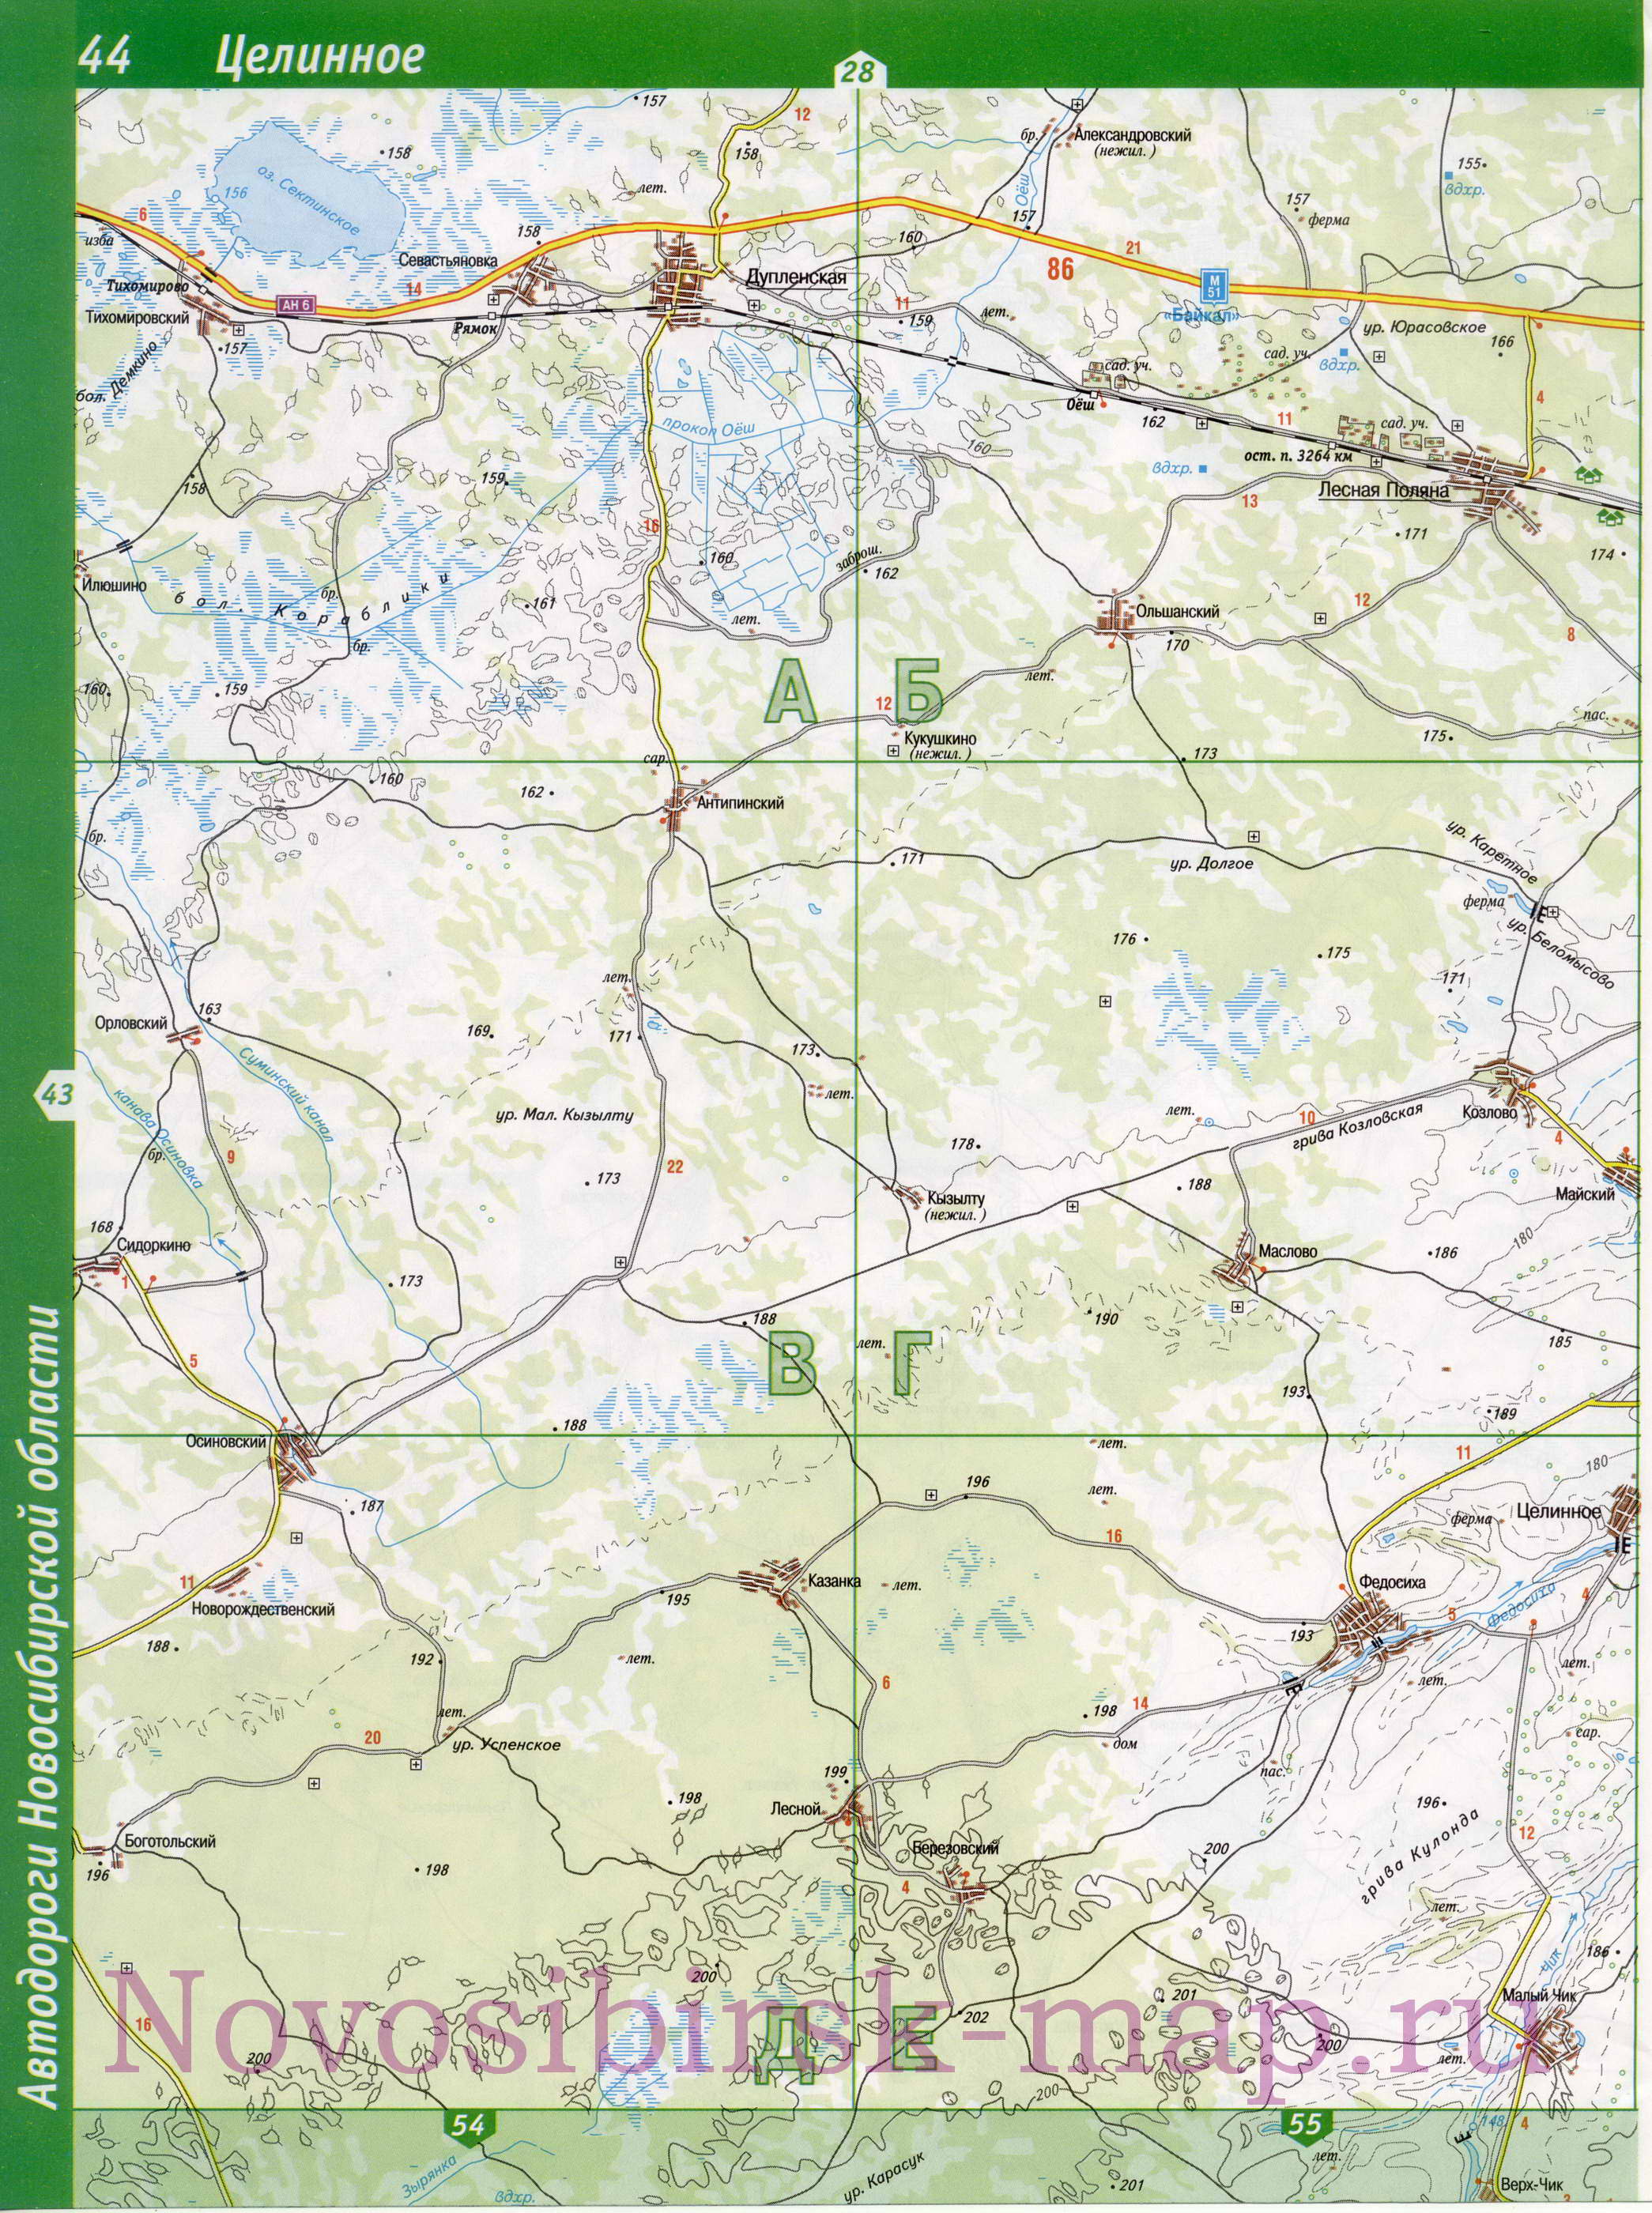 Карта Новосибирской области. Новосибирская область - подробная топографическая карта масштаба 1см:2км, C1 - 